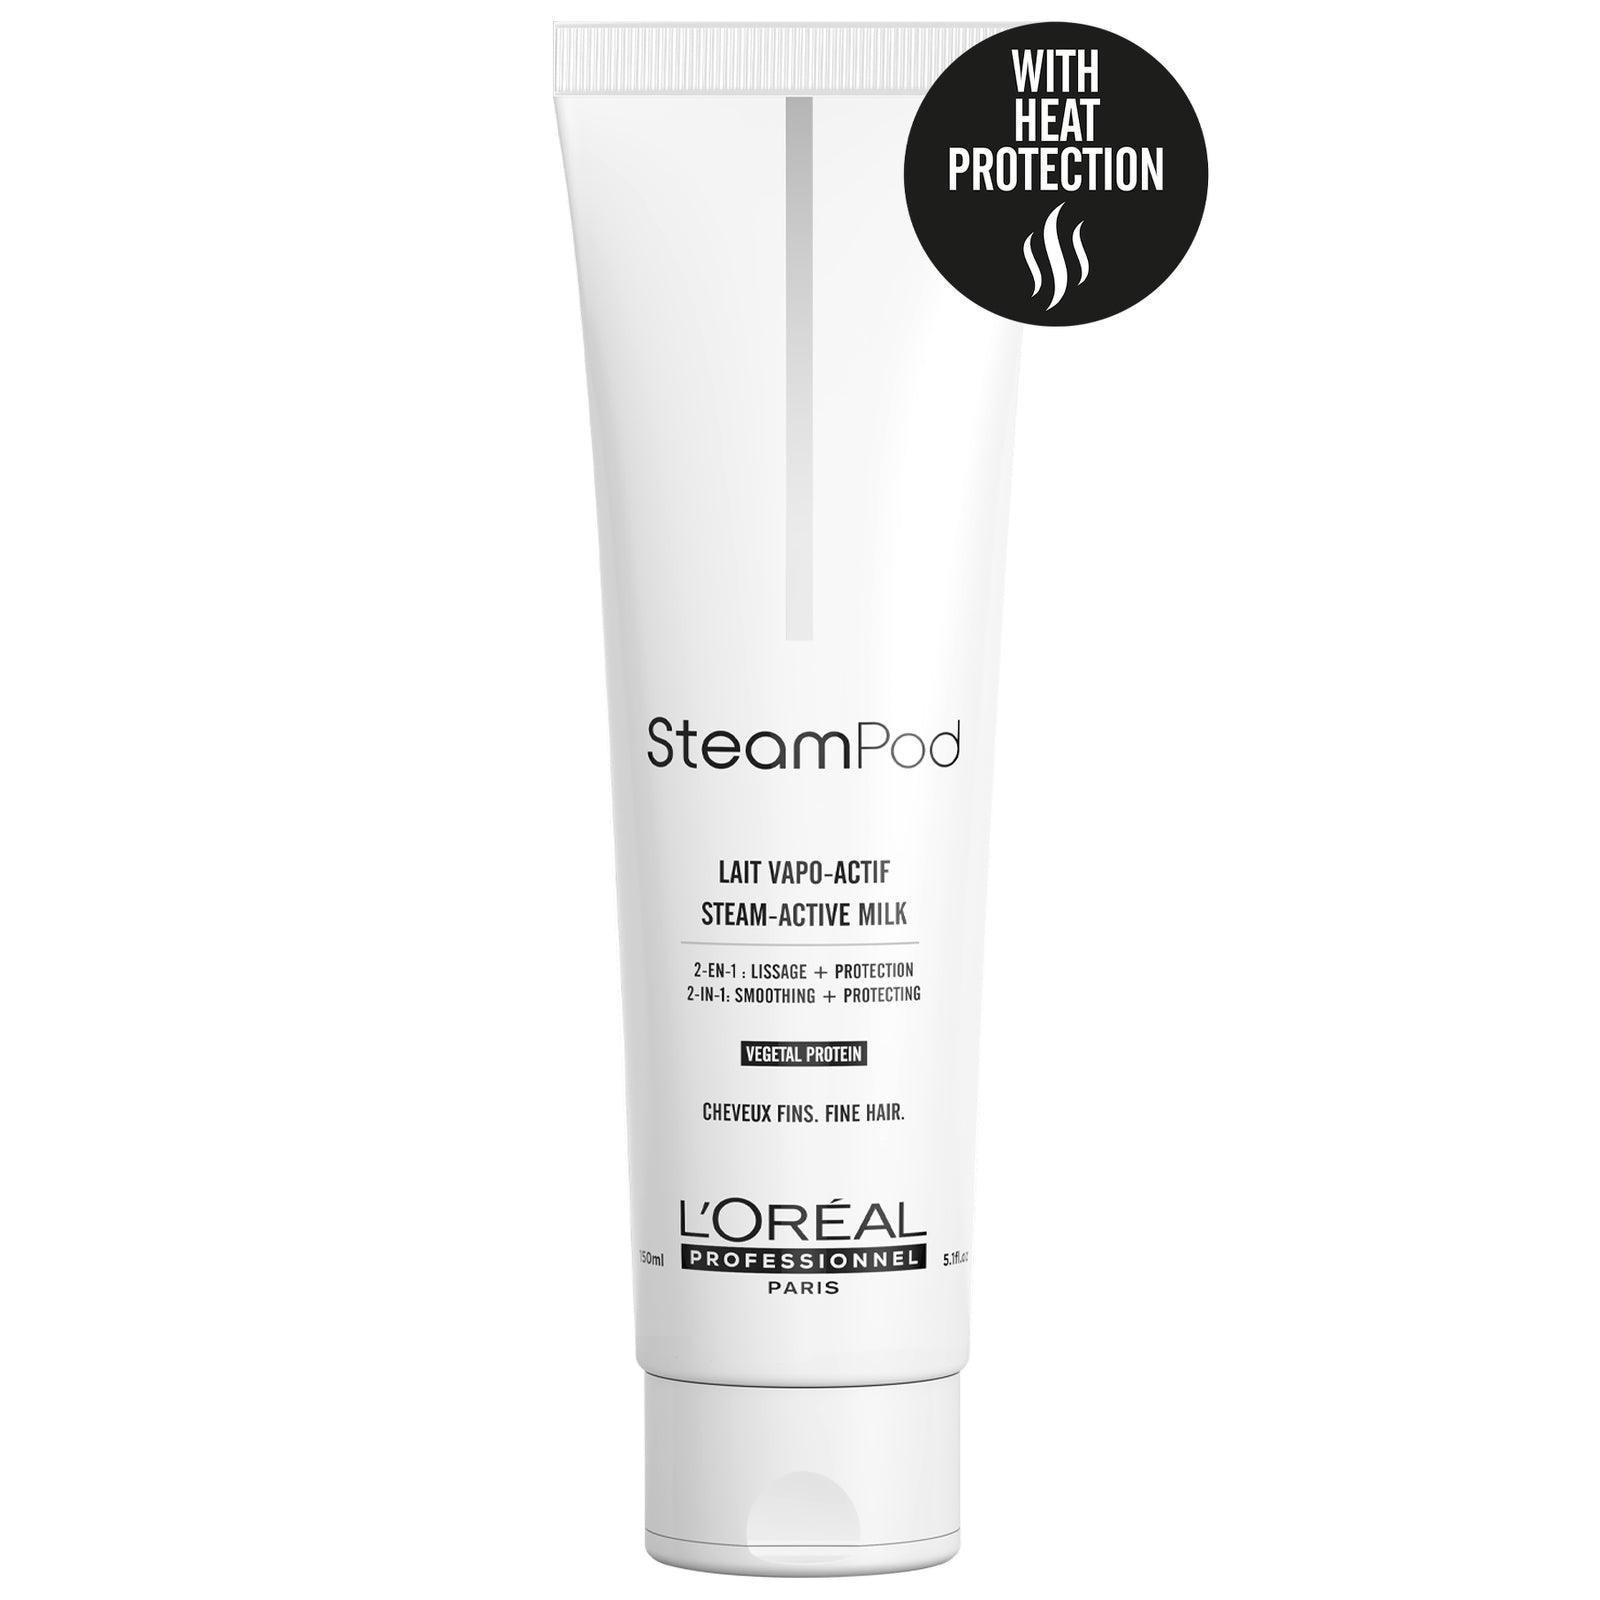 L’Oreal Professionnel Steampod Steam-Active Milk - Fine Hair 150ml - L'Oreal